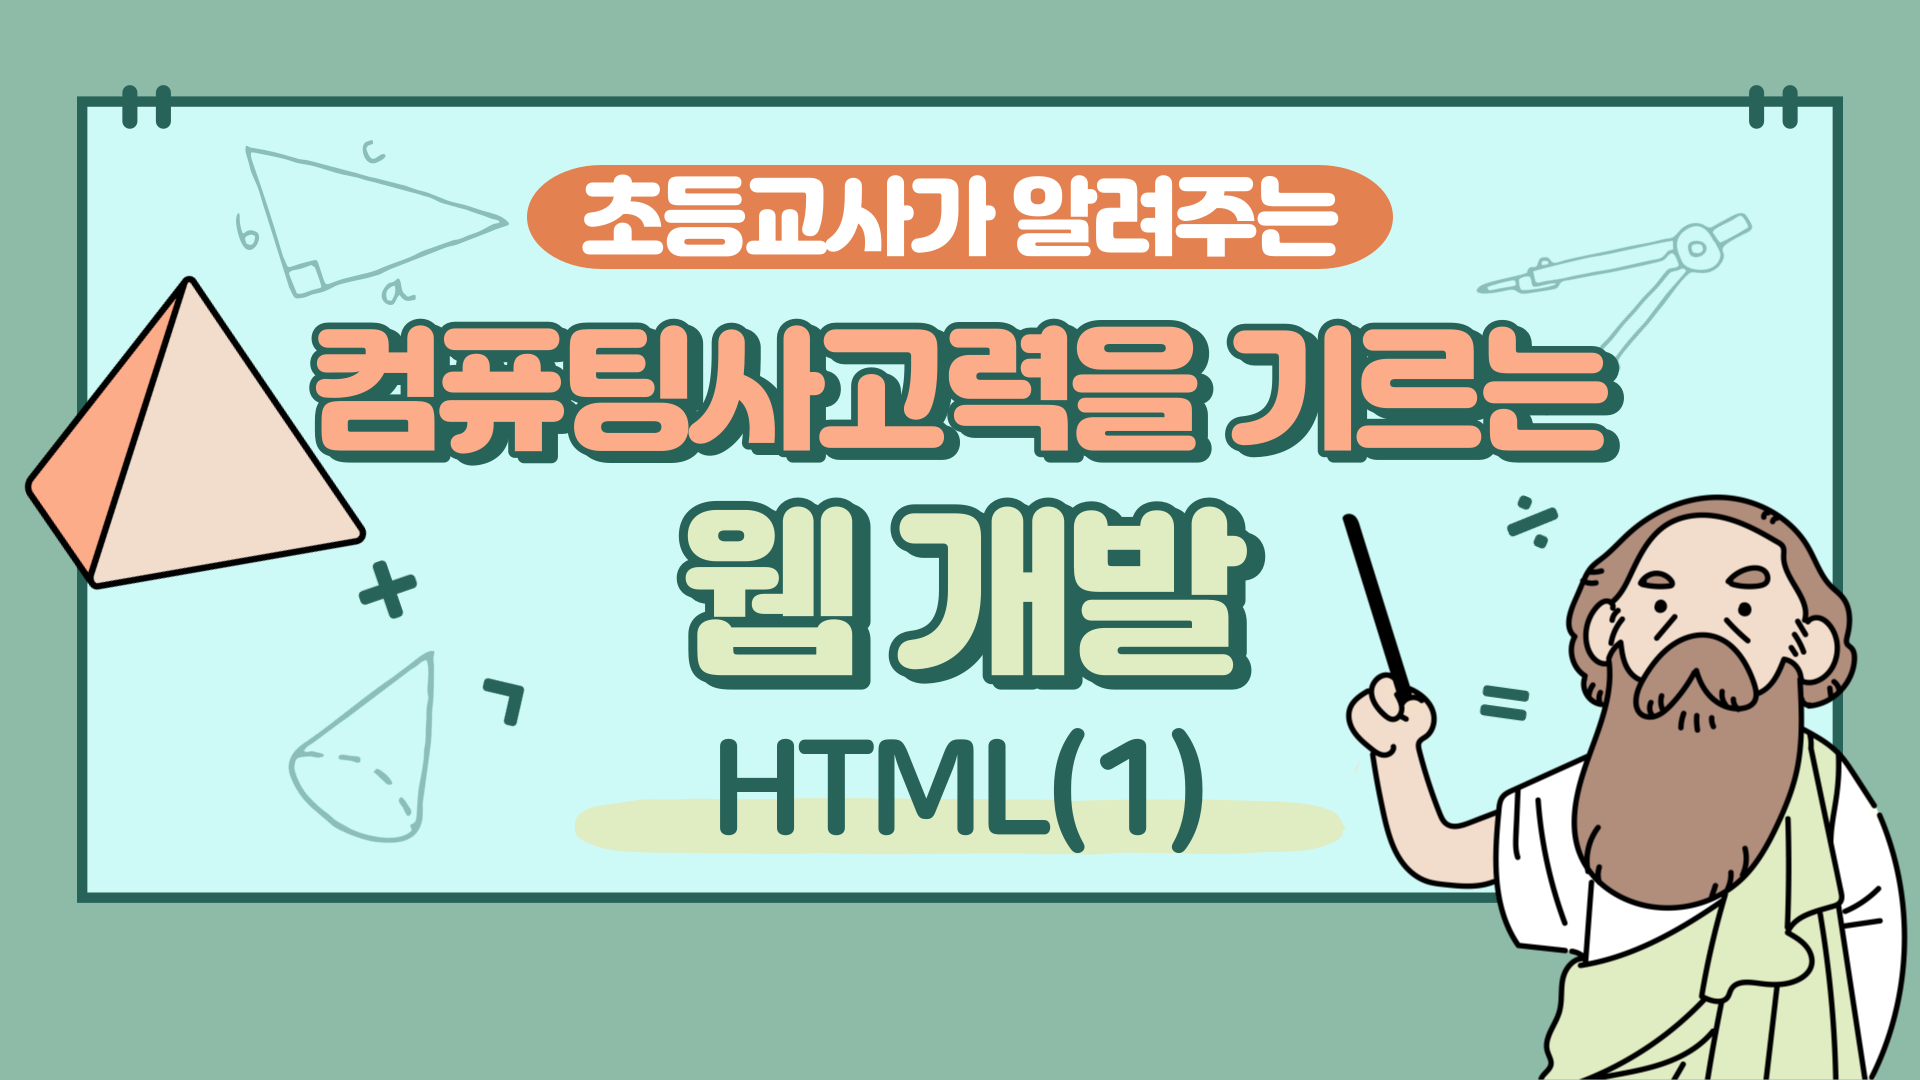 컴퓨팅사고력을 기르는 웹 개발(HTML) Step.1 (4기)